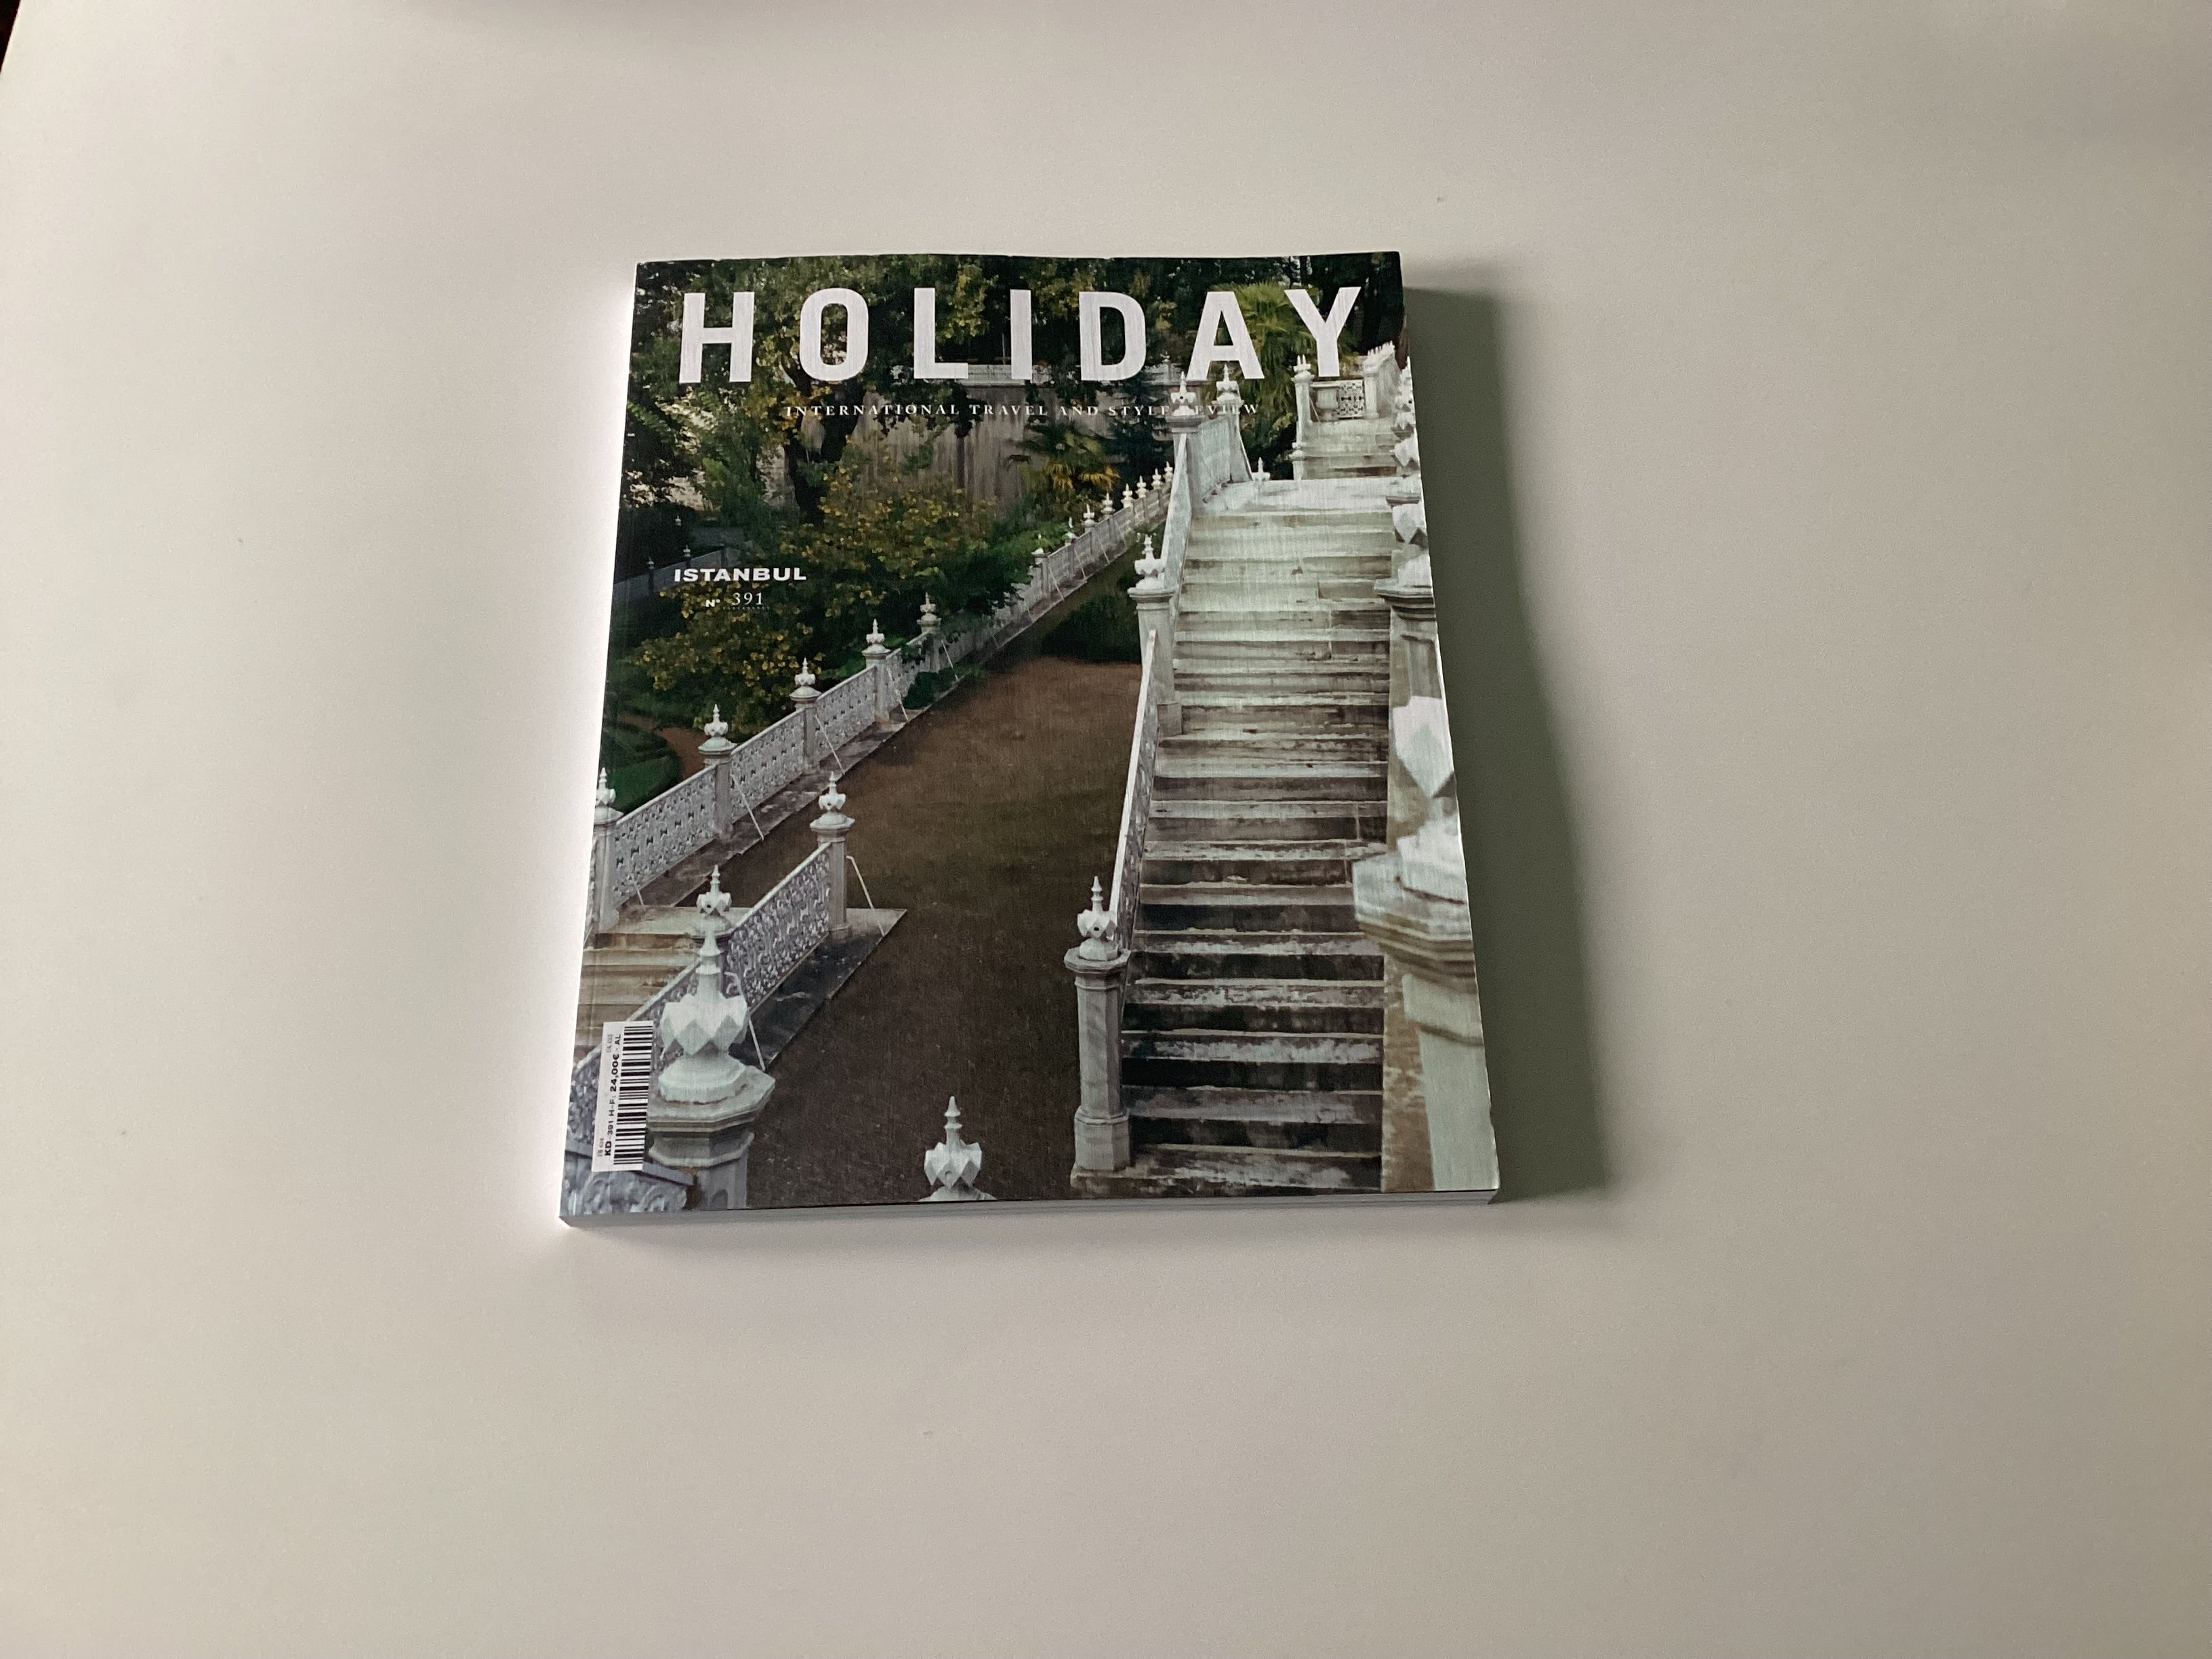 Holiday magazine 391 Istanbul issue